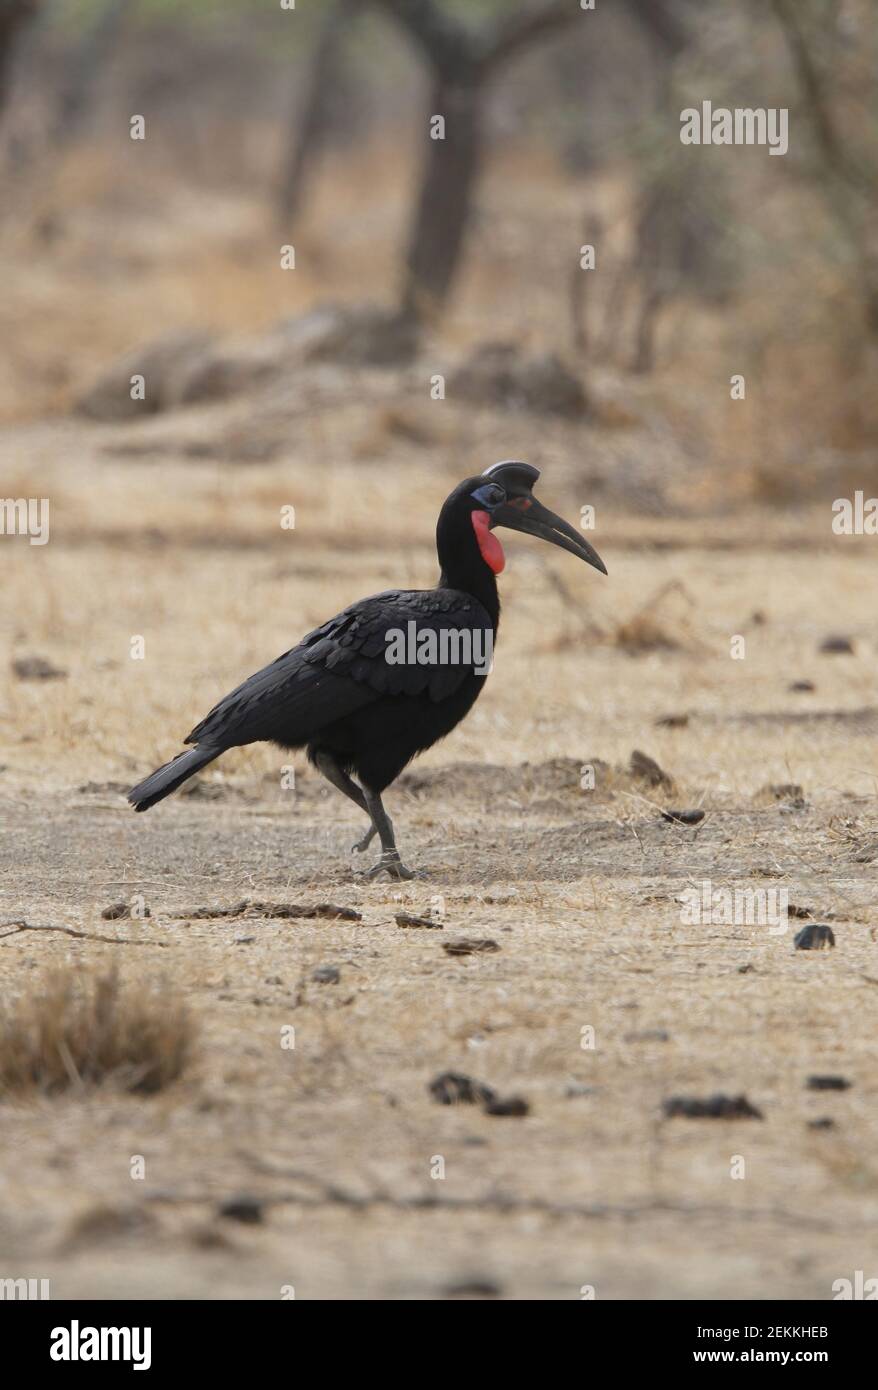 Nördlicher Erdhornvogel (Bucorvus abyssinicus) Erwachsene Männchen wandern durch trockenes Grasland Äthiopien April Stockfoto